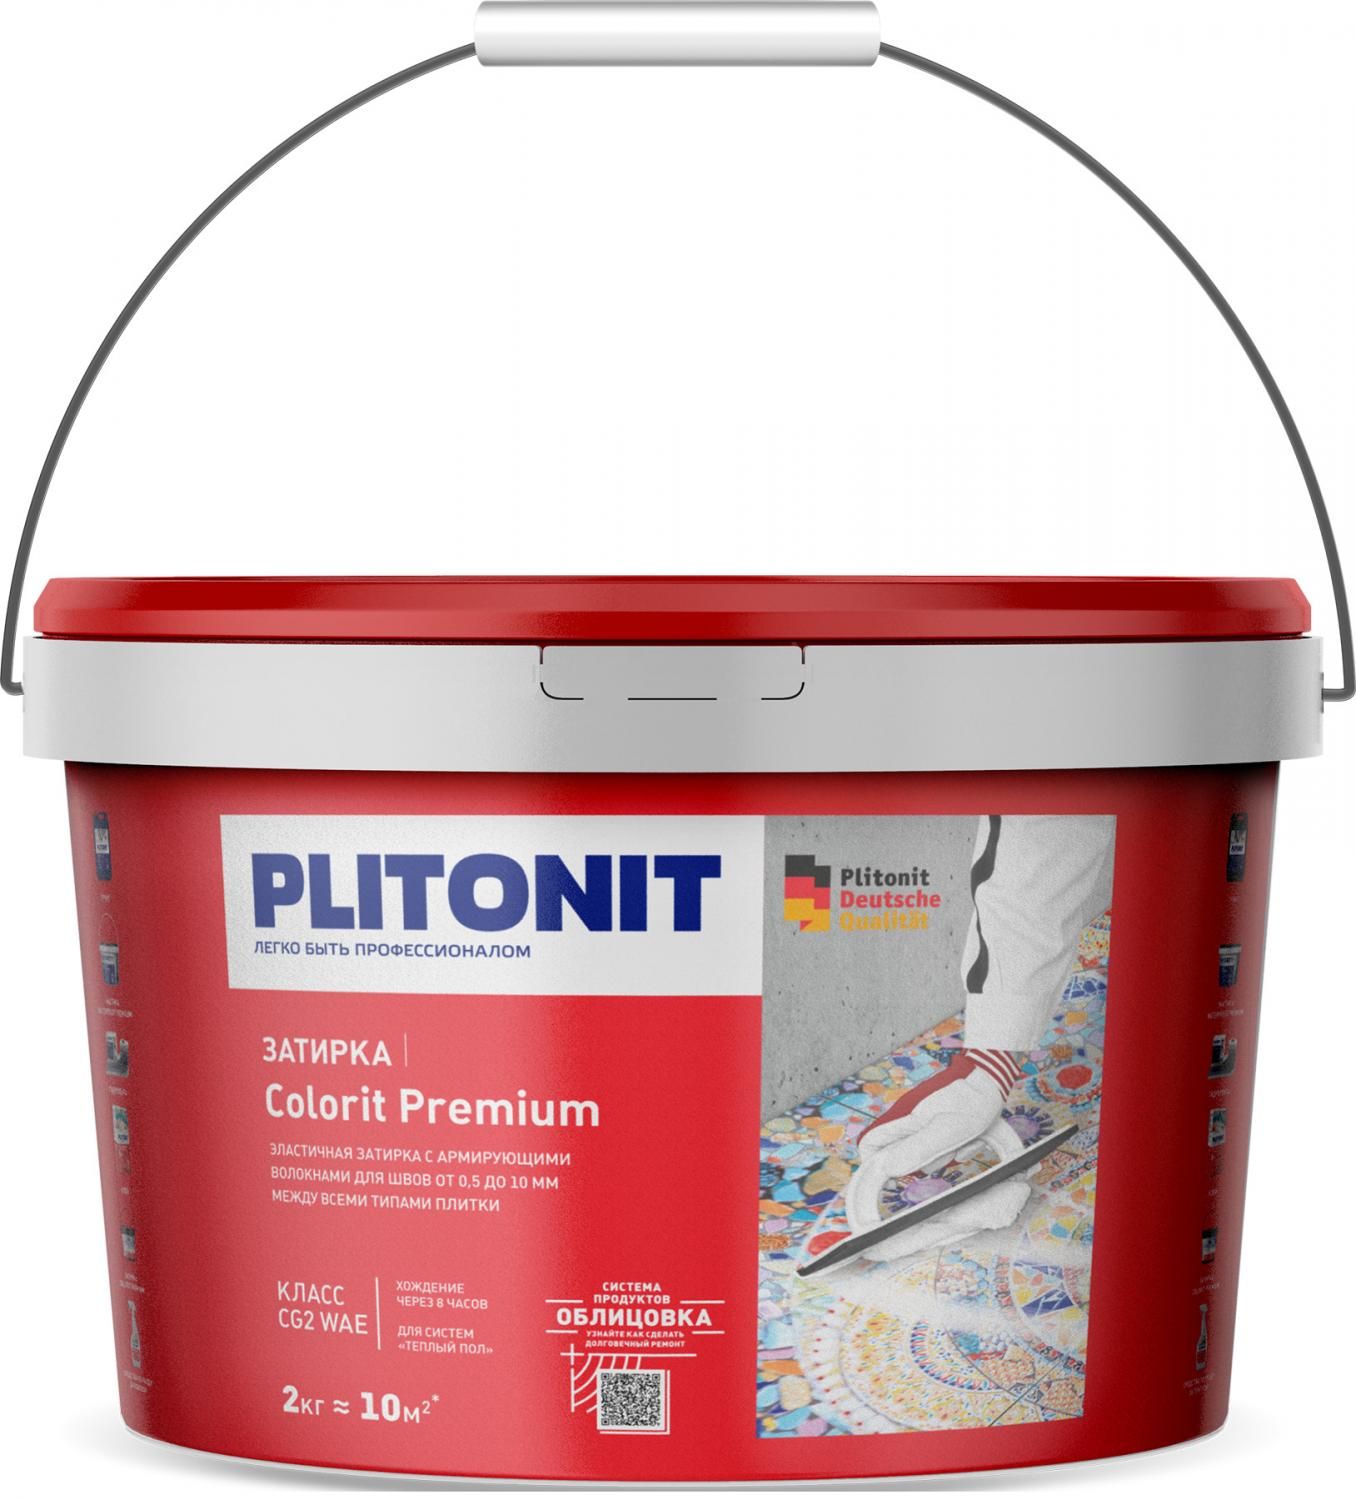 Купить Затирка Plitonit Colorit Premium светло-серая 2 кг цементная